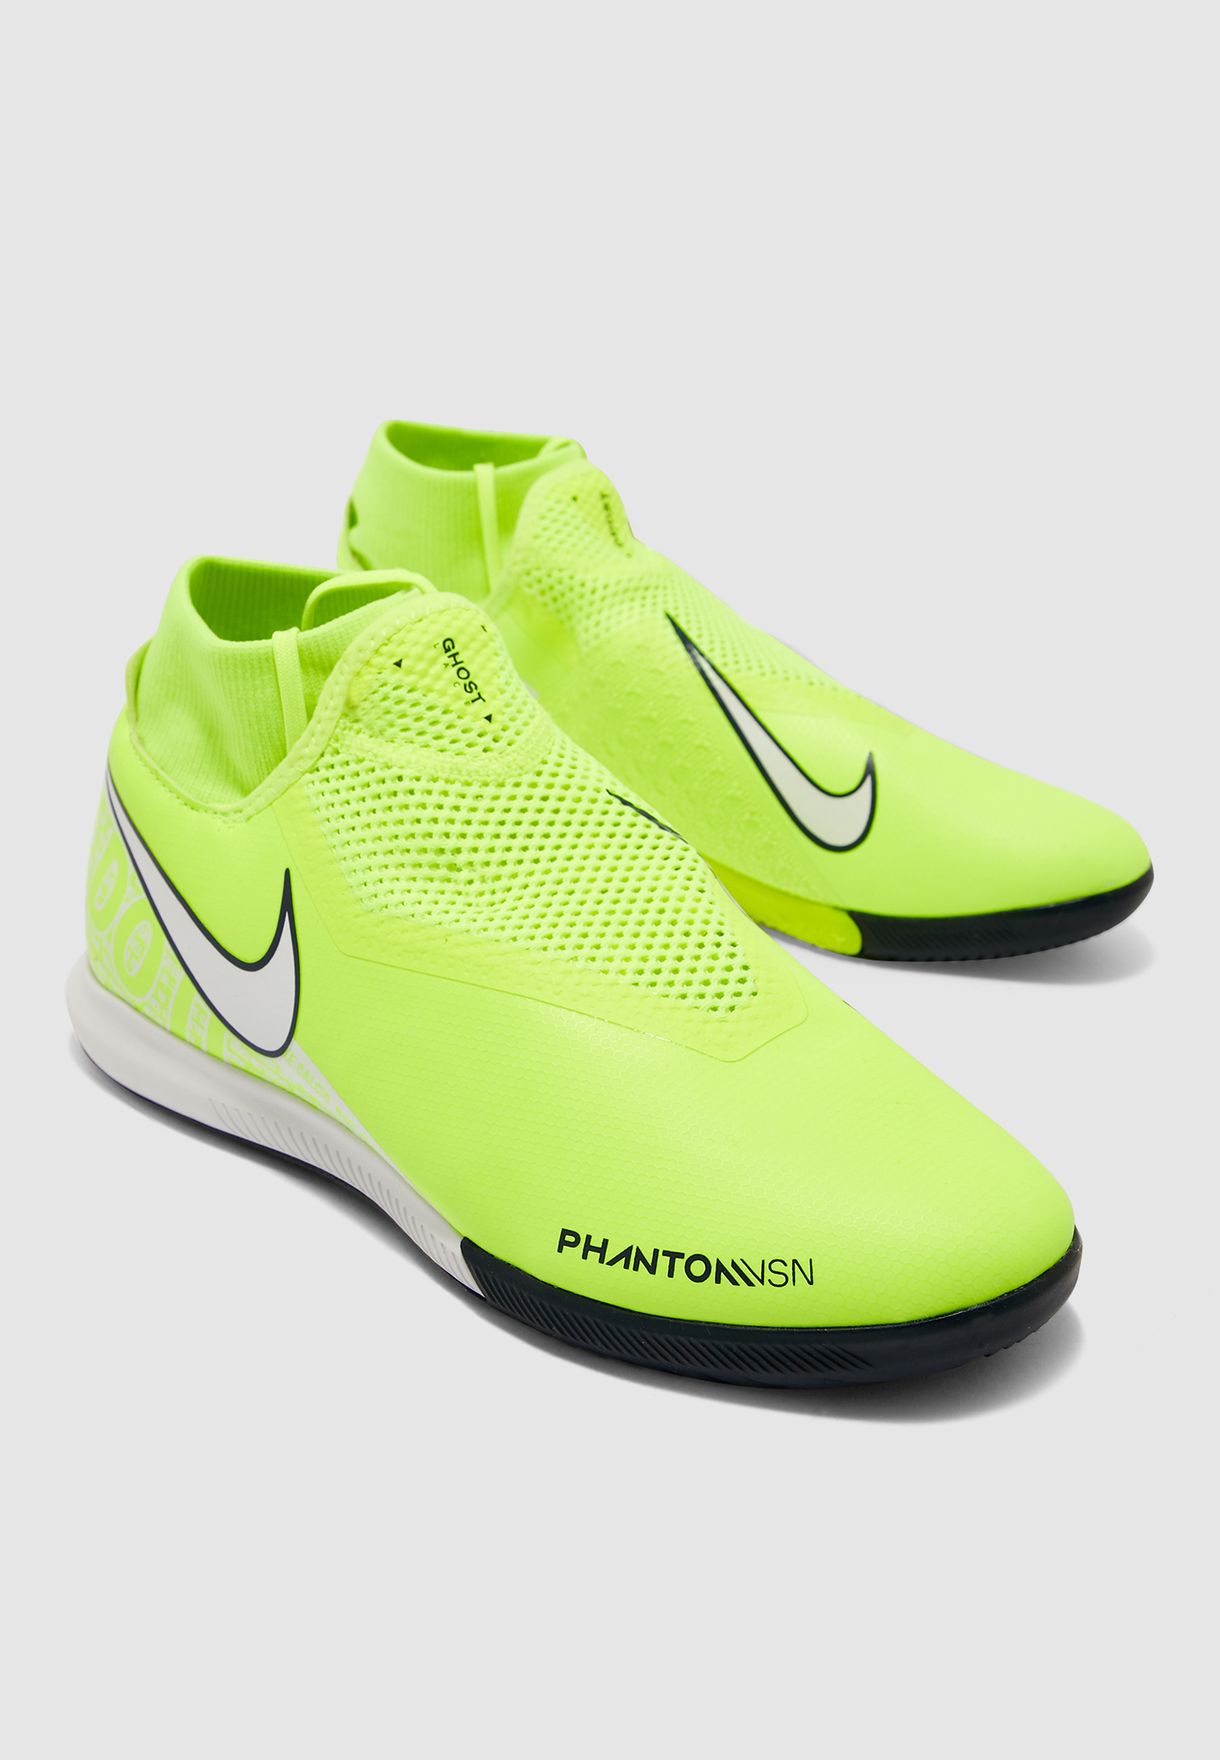 Nike Phantom Vsn Academy IC AO3225600 Amazon.co.uk